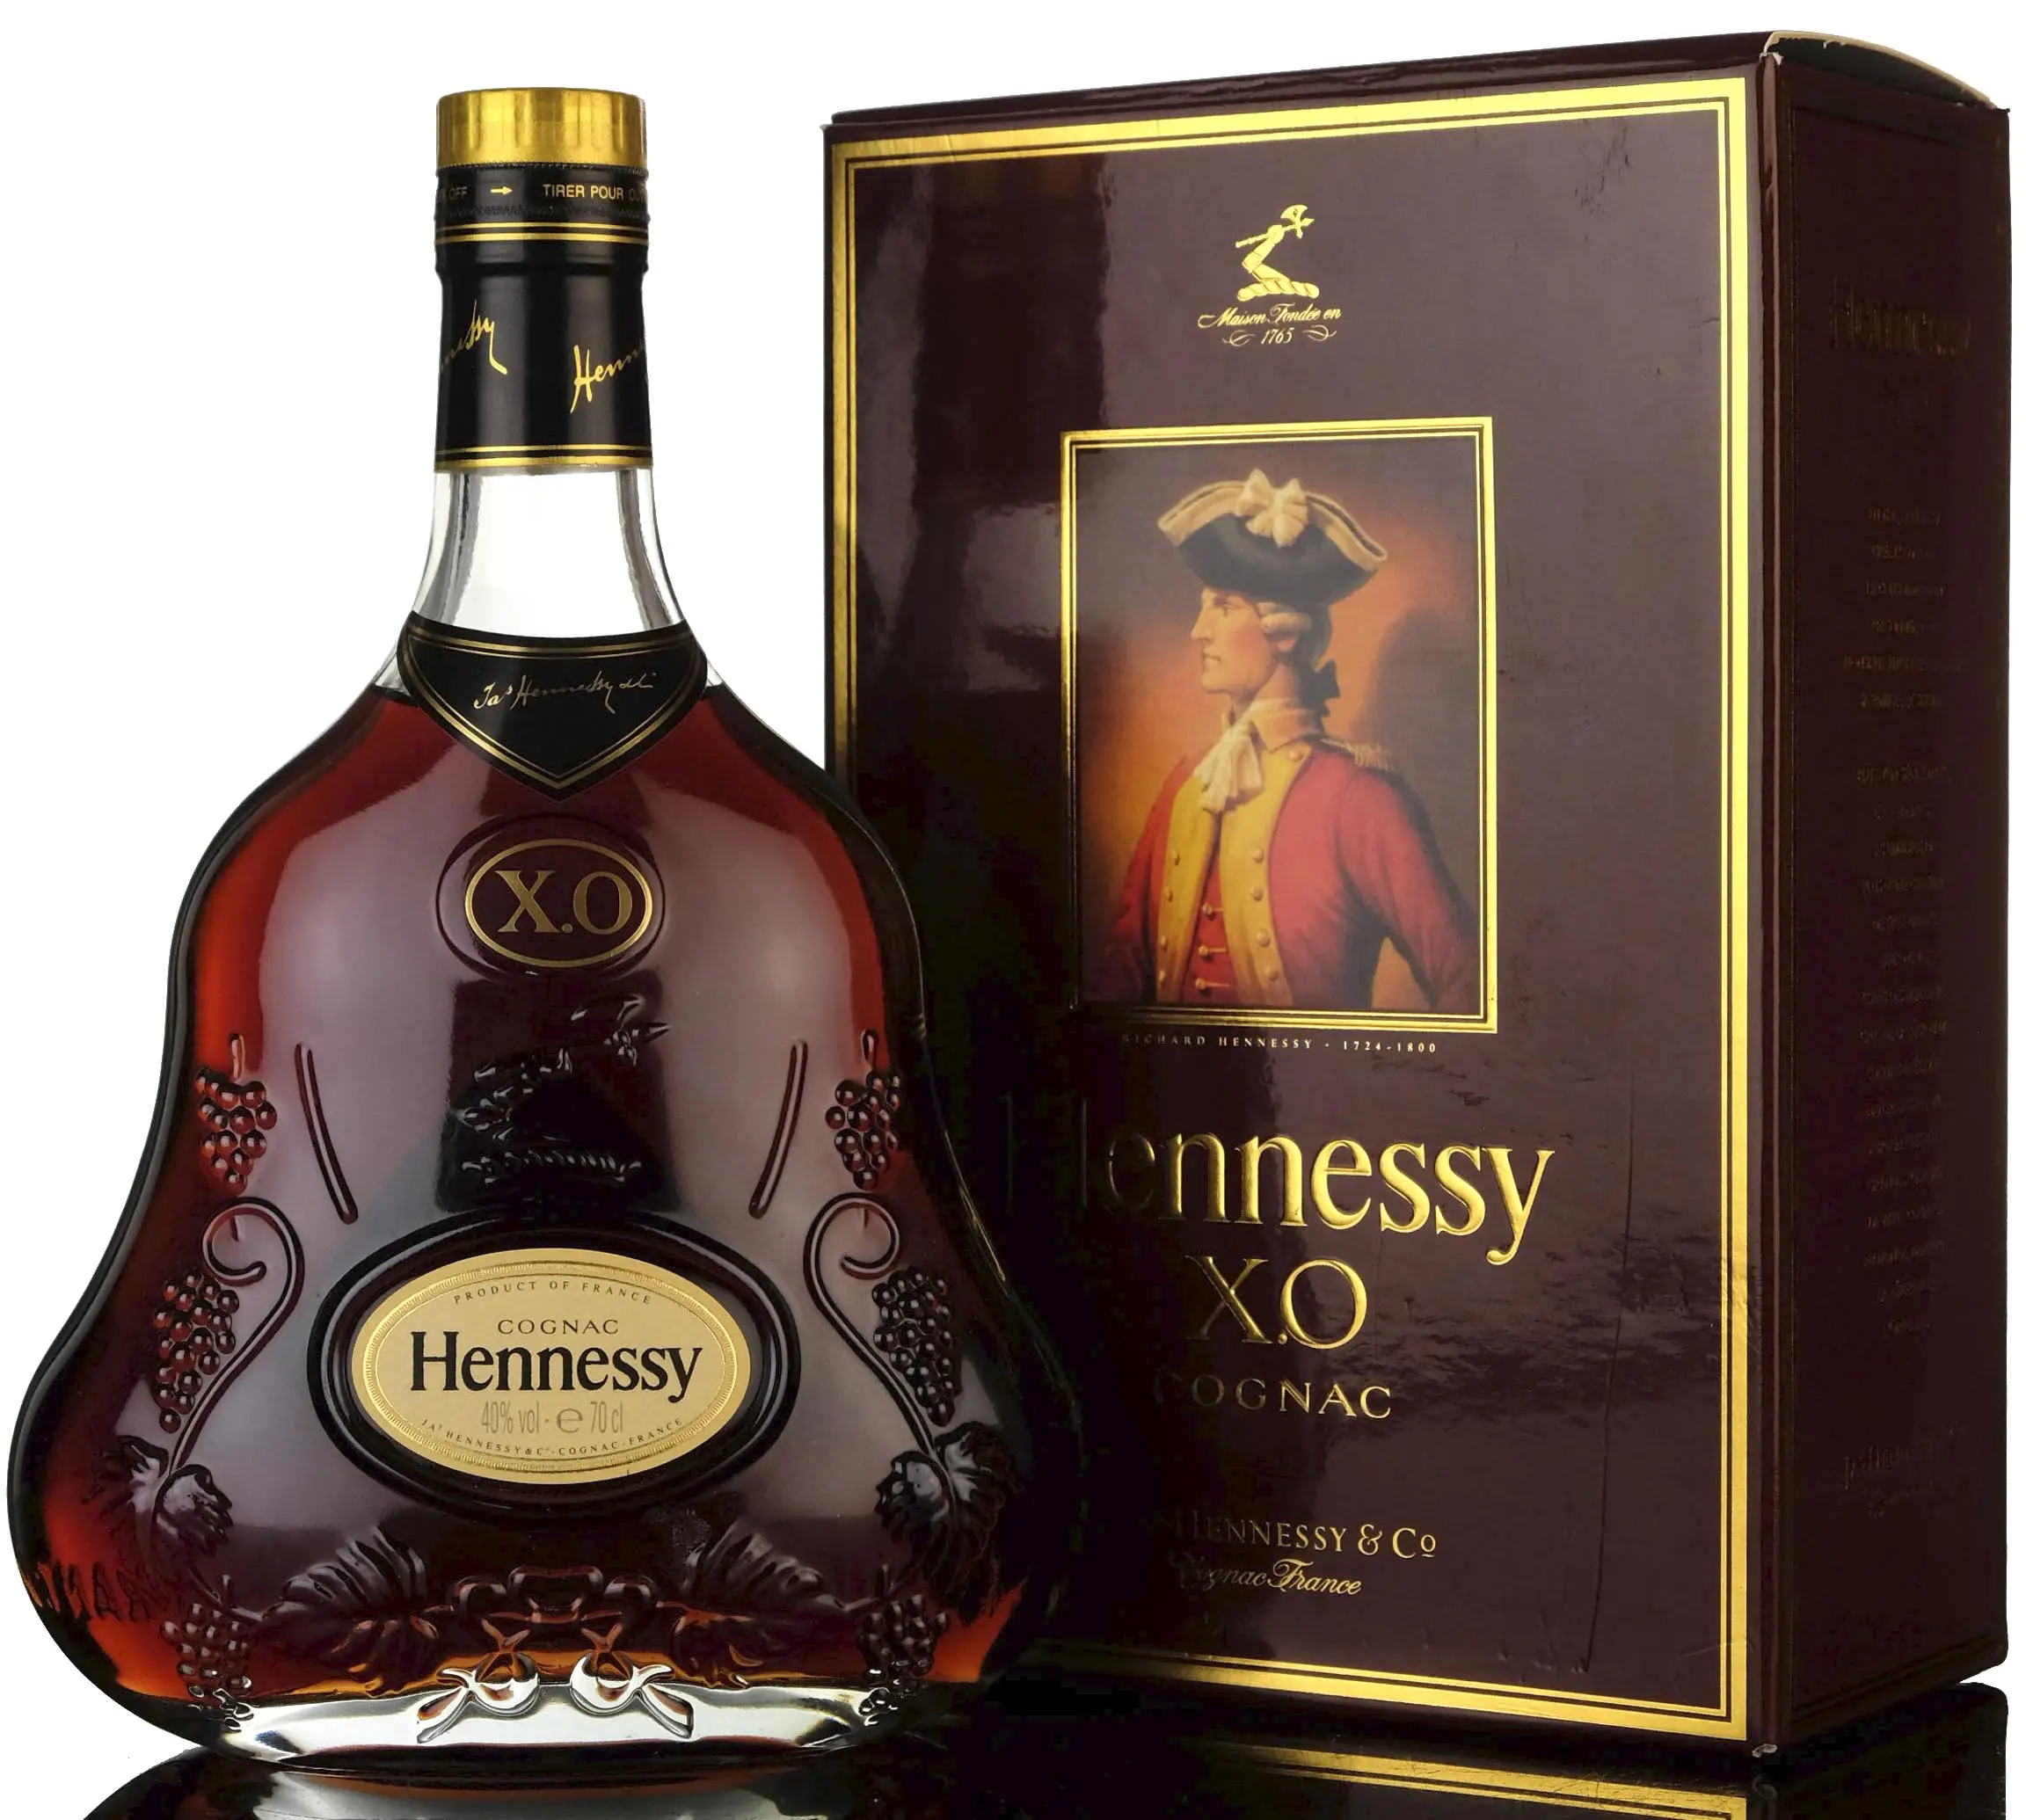 Коньяк хеннесси купить в москве. Коньяк Hennessy XO Cognac. Хеннесси Хо 0.5 Cognac. Hennessy Cognac 0.5 Хо. Коньяк Hennessy 0.5 Cognac.